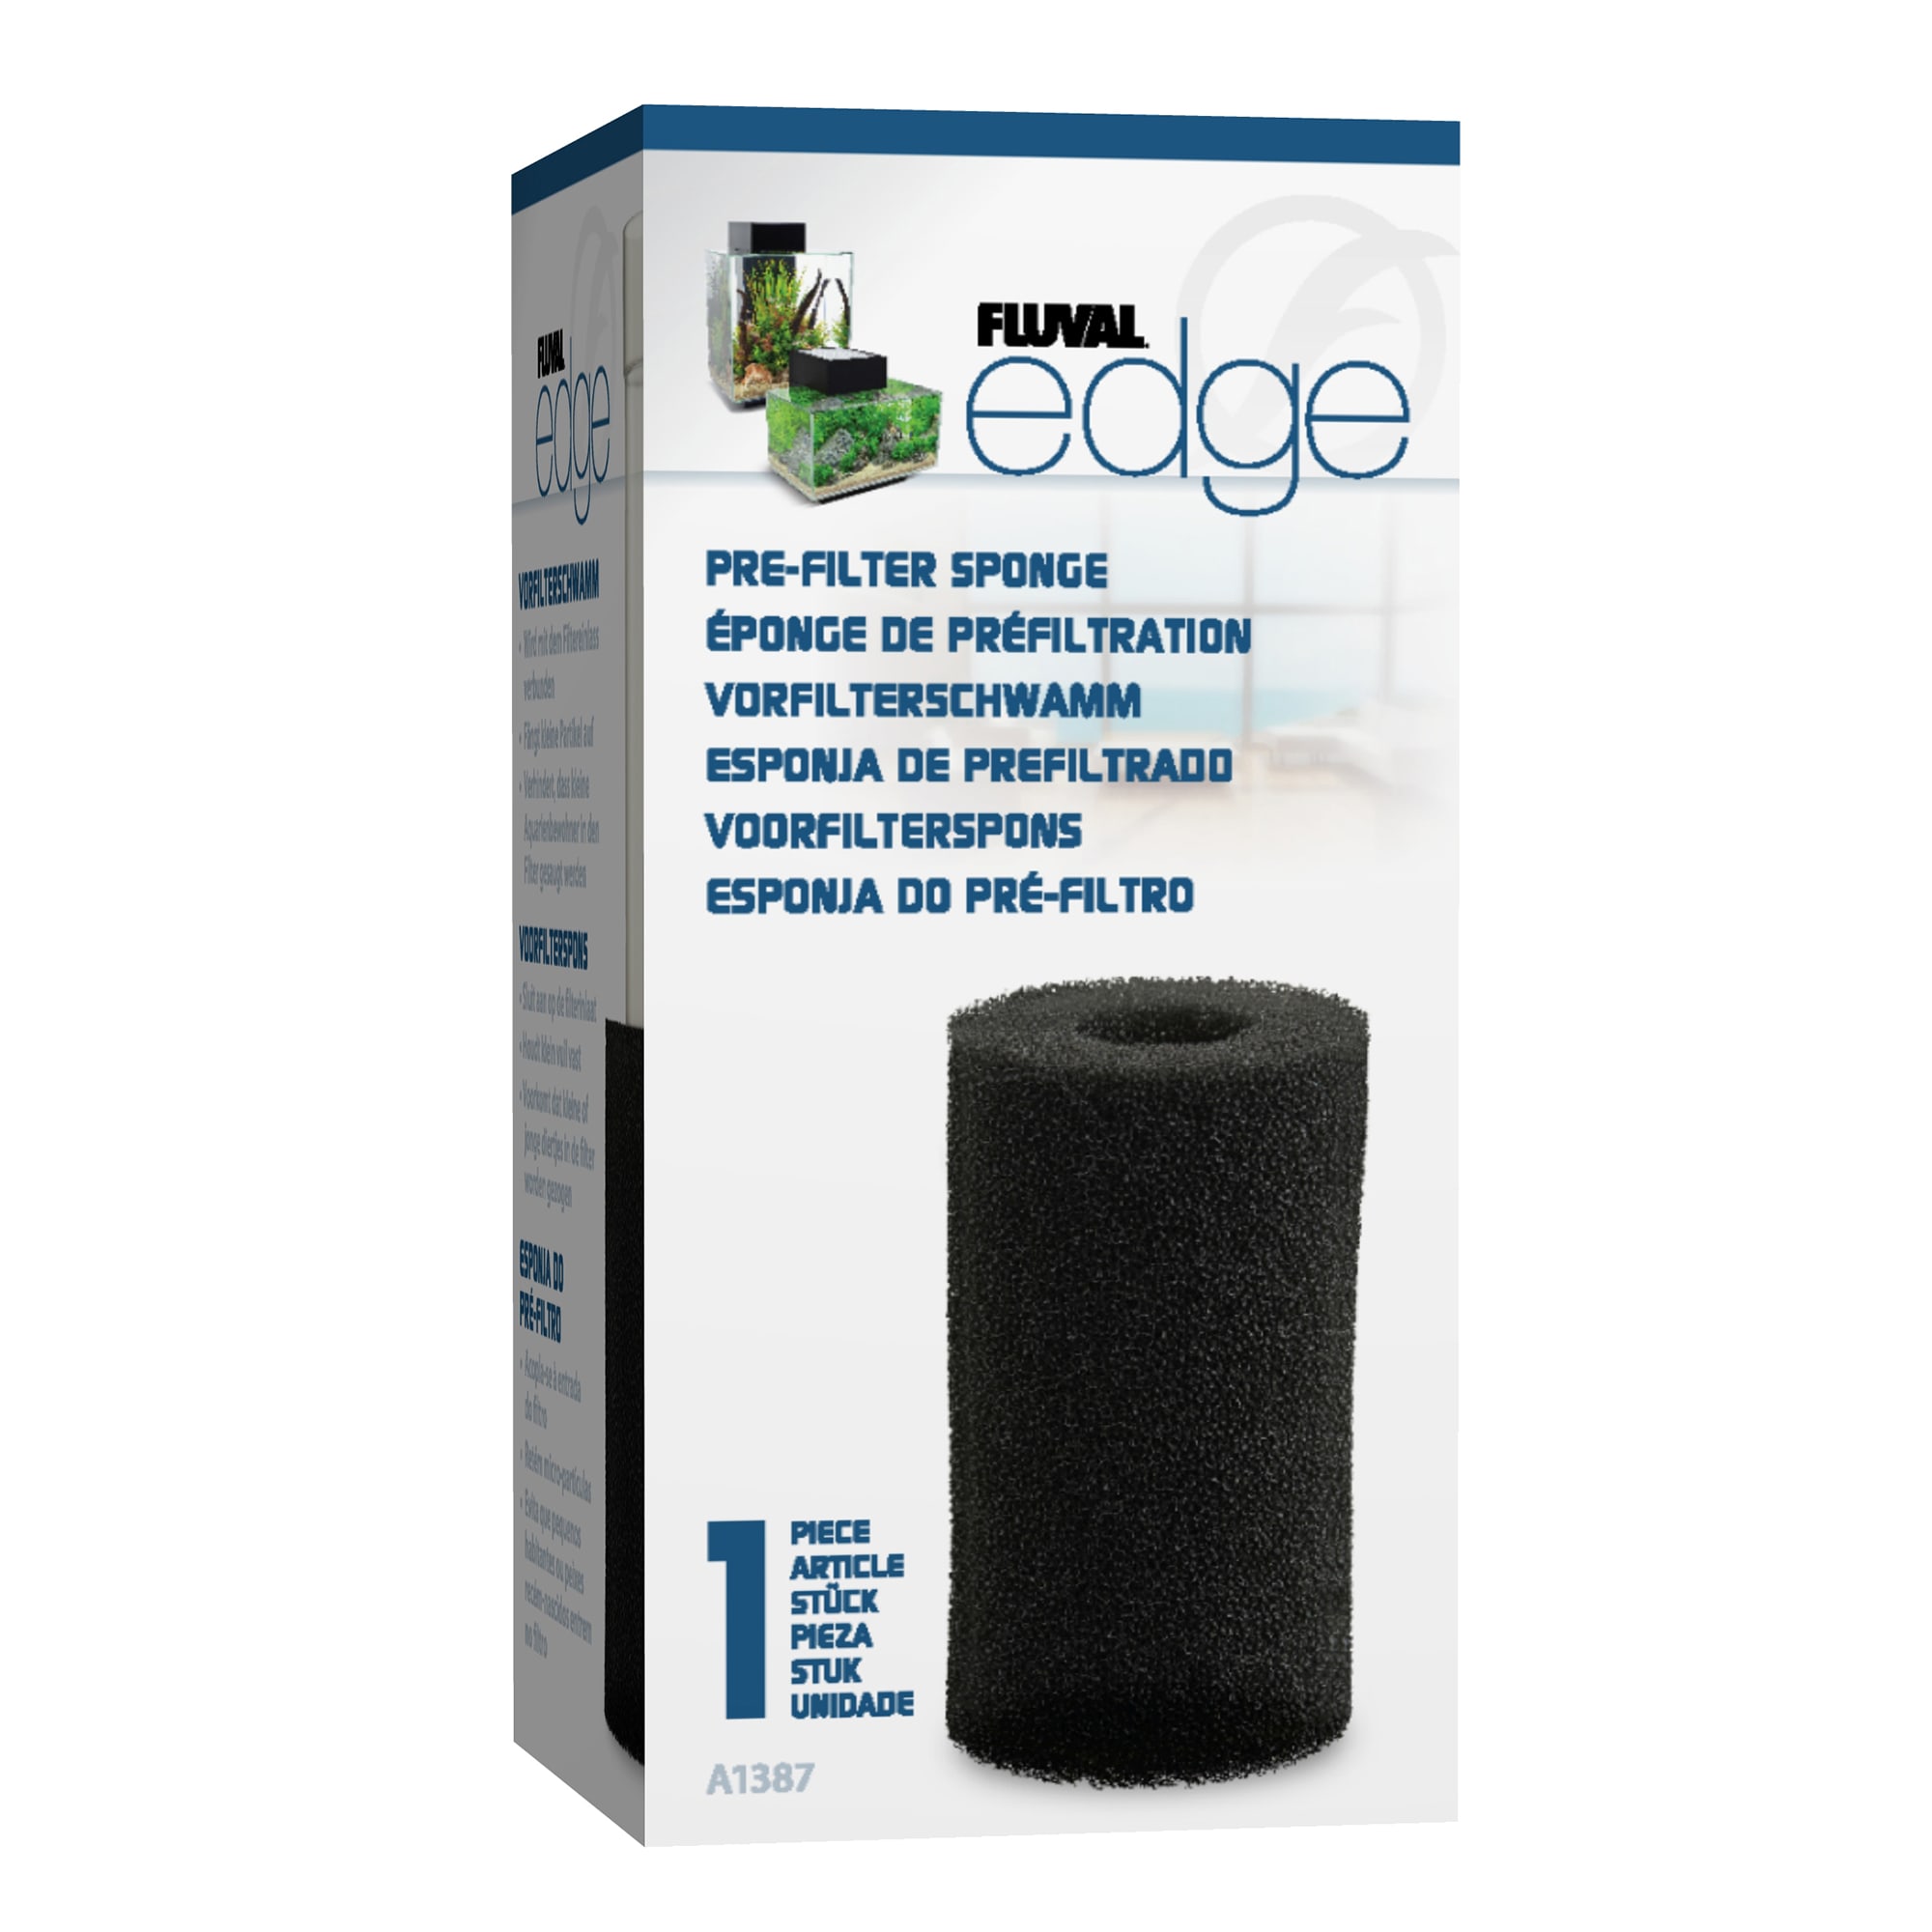 Fluval Edge Pre-Filter Sponge, Pack of 